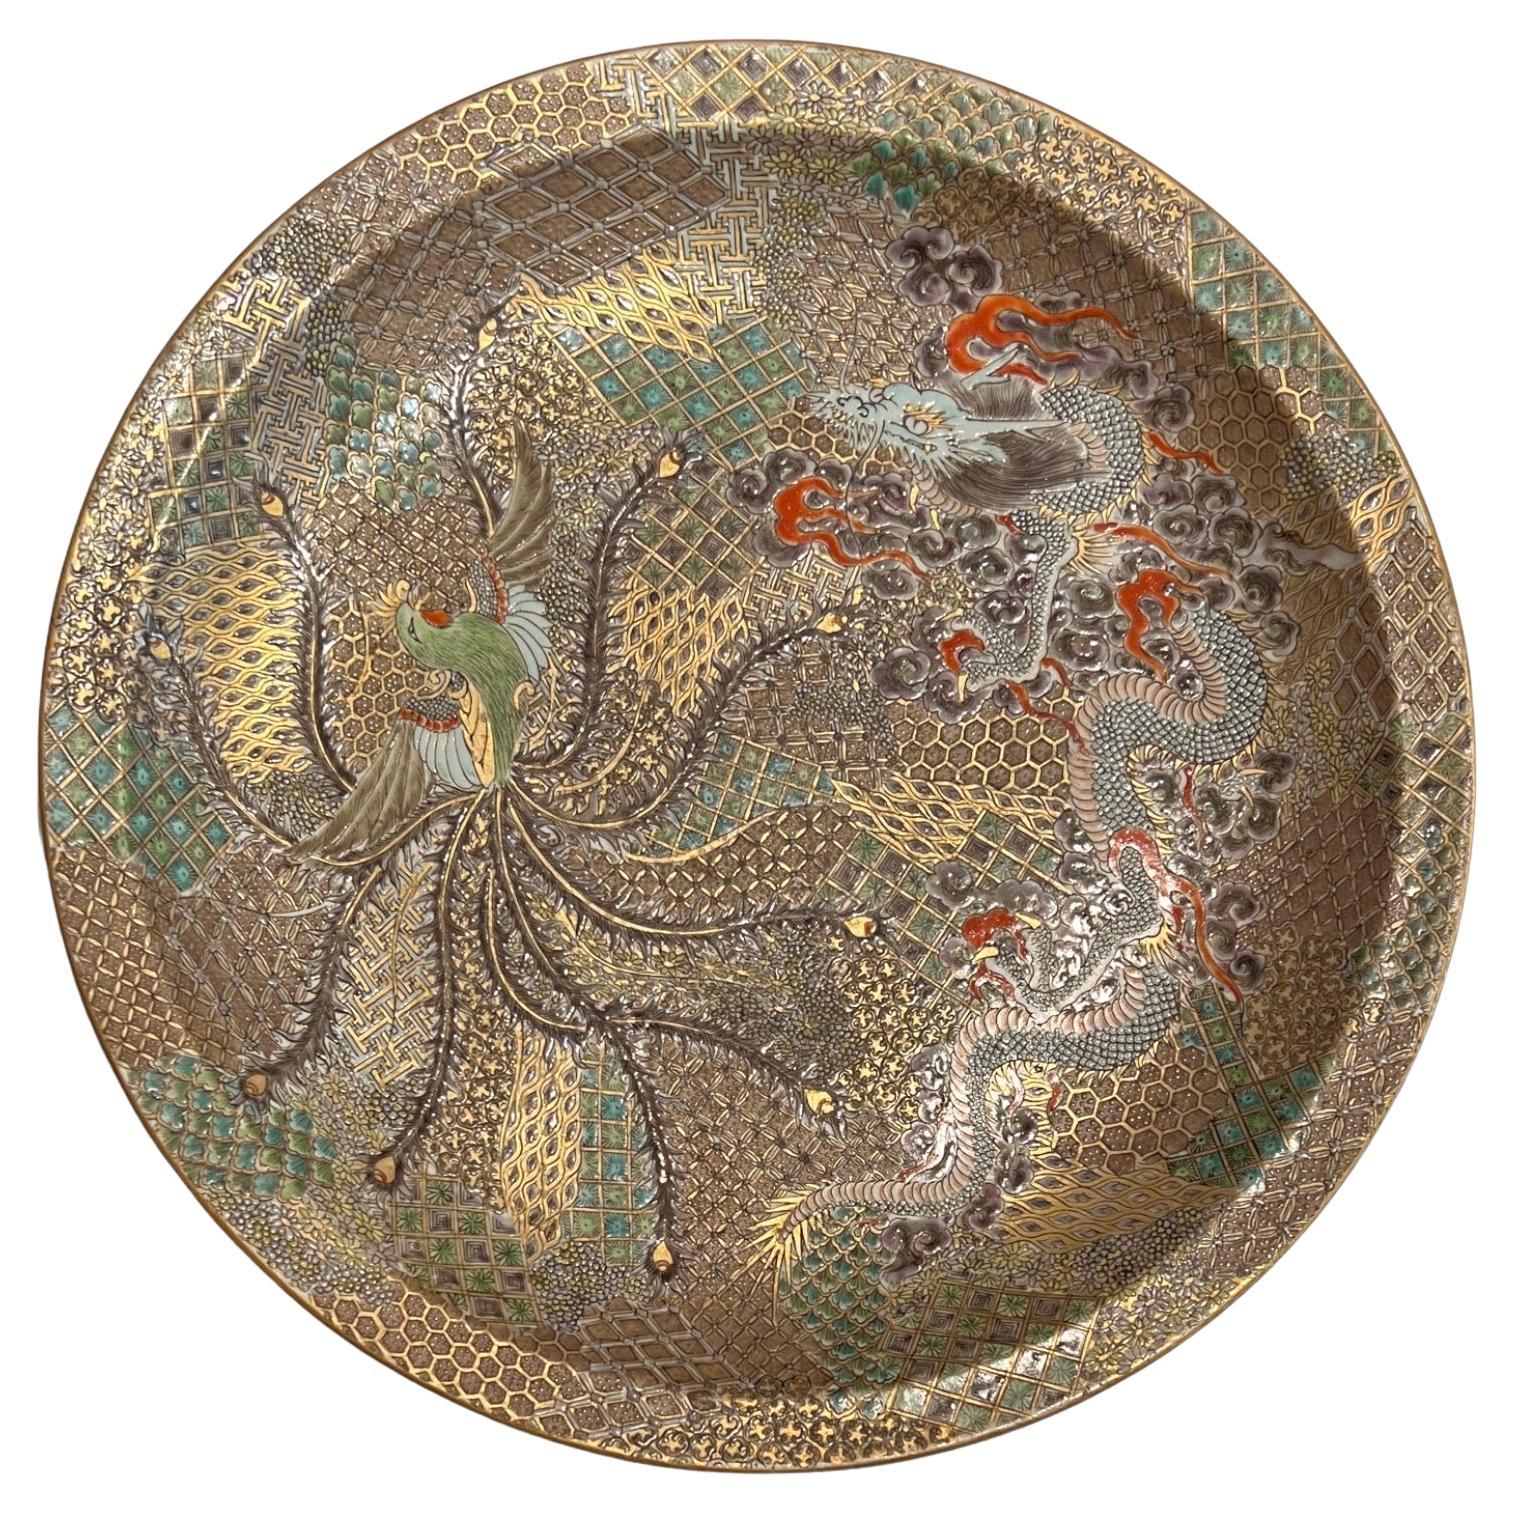 Japan, Kutani Dish with Dragon and Phoenix, Meiji Period